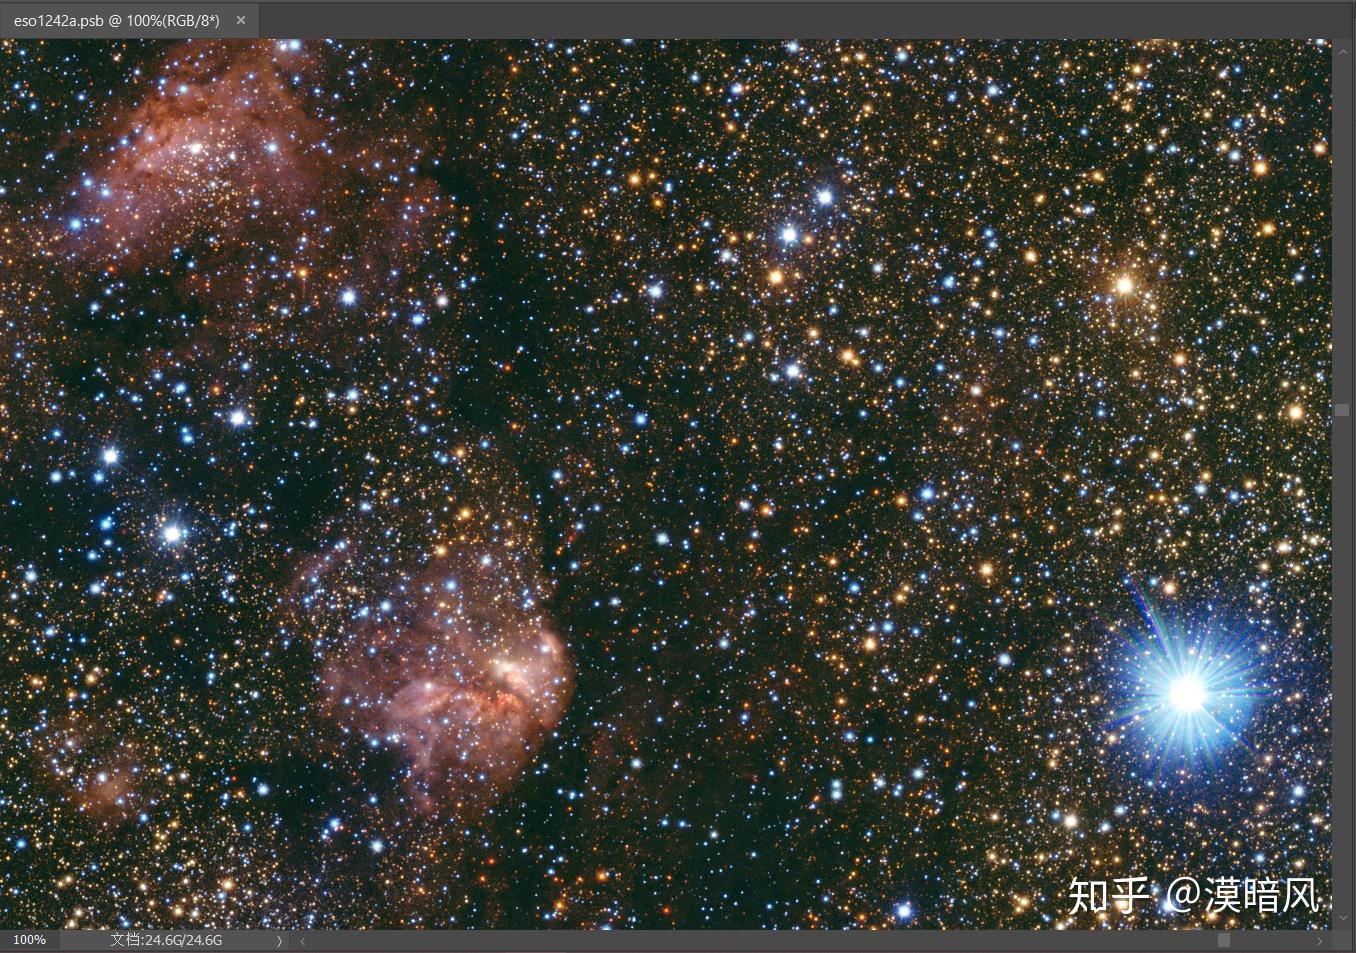 银河系全景图 24g图片